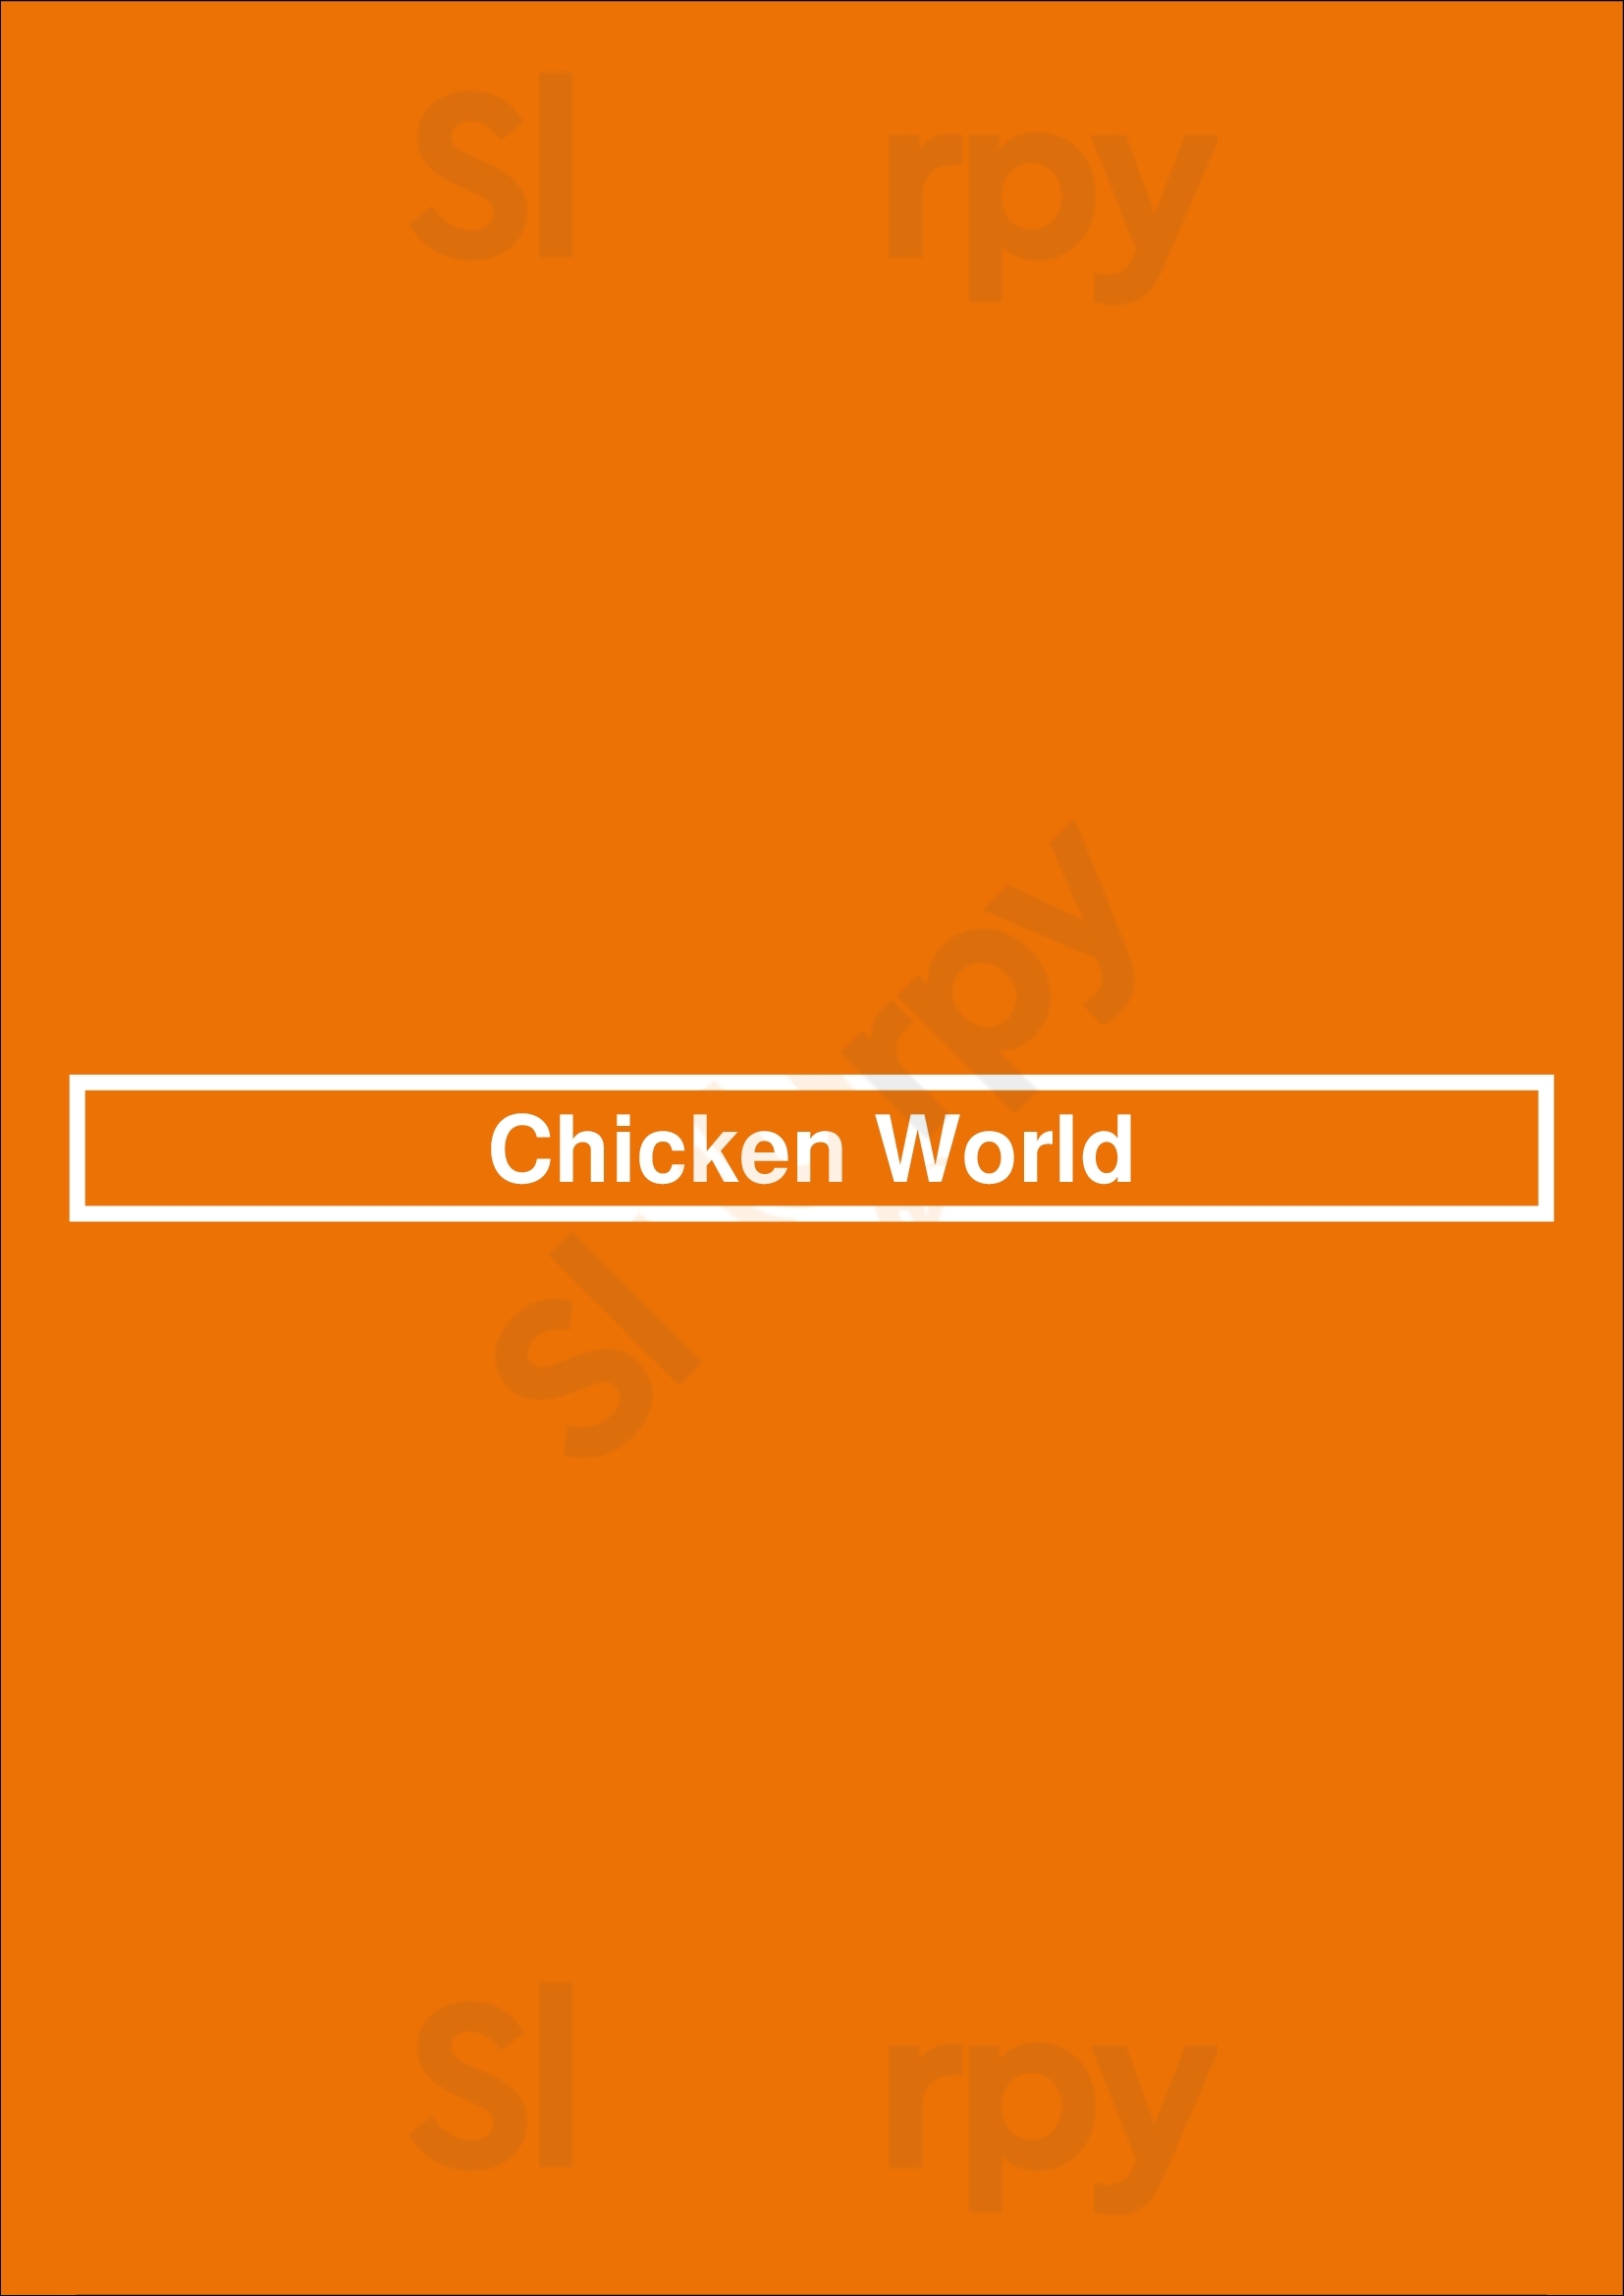 Chicken World Surrey Menu - 1